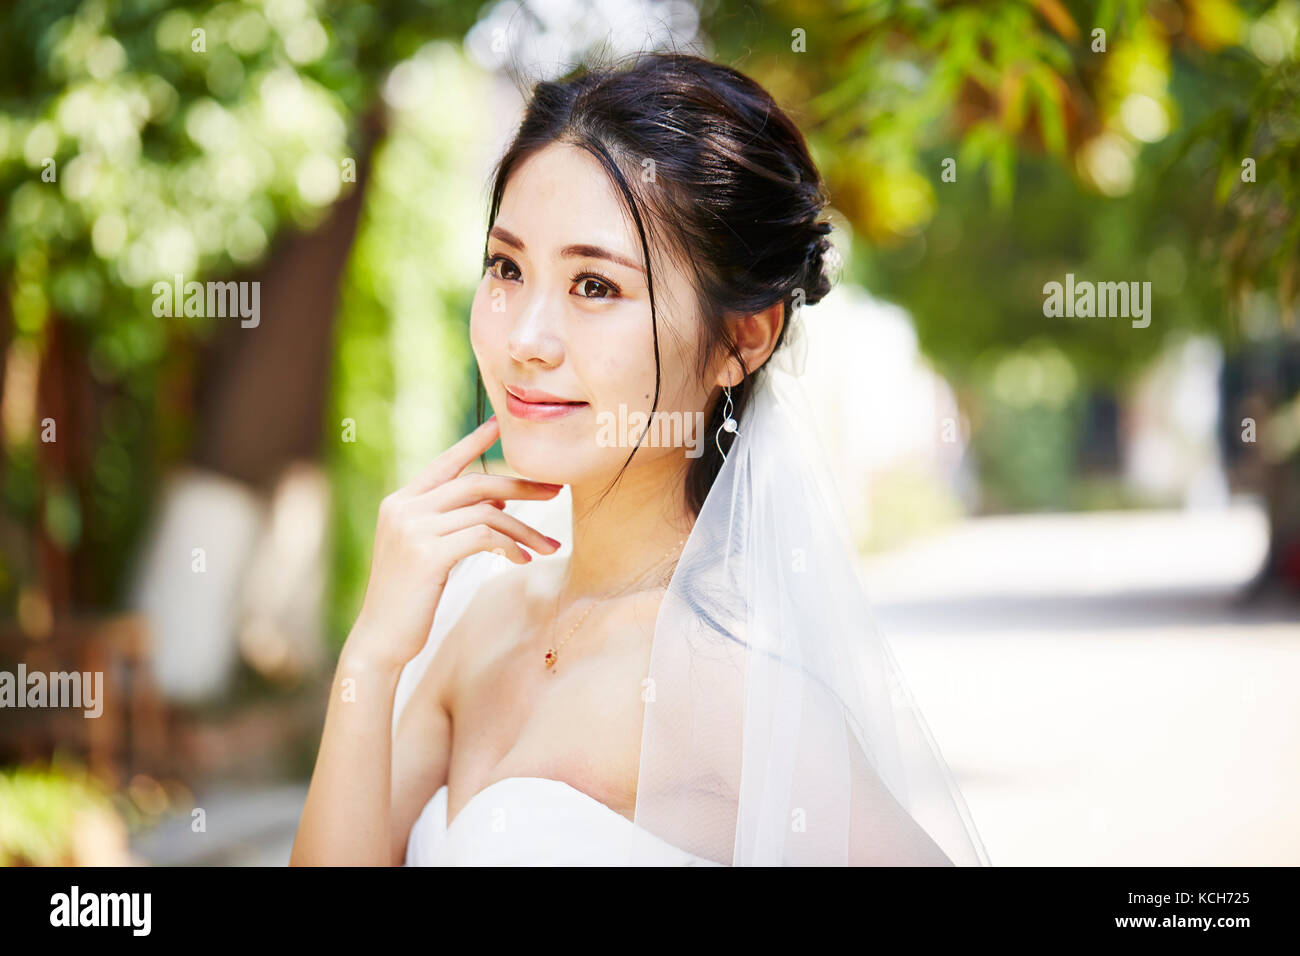 Outdoor ritratto della bella e felice di giovani asiatici sposa indossa velo nuziale. Foto Stock